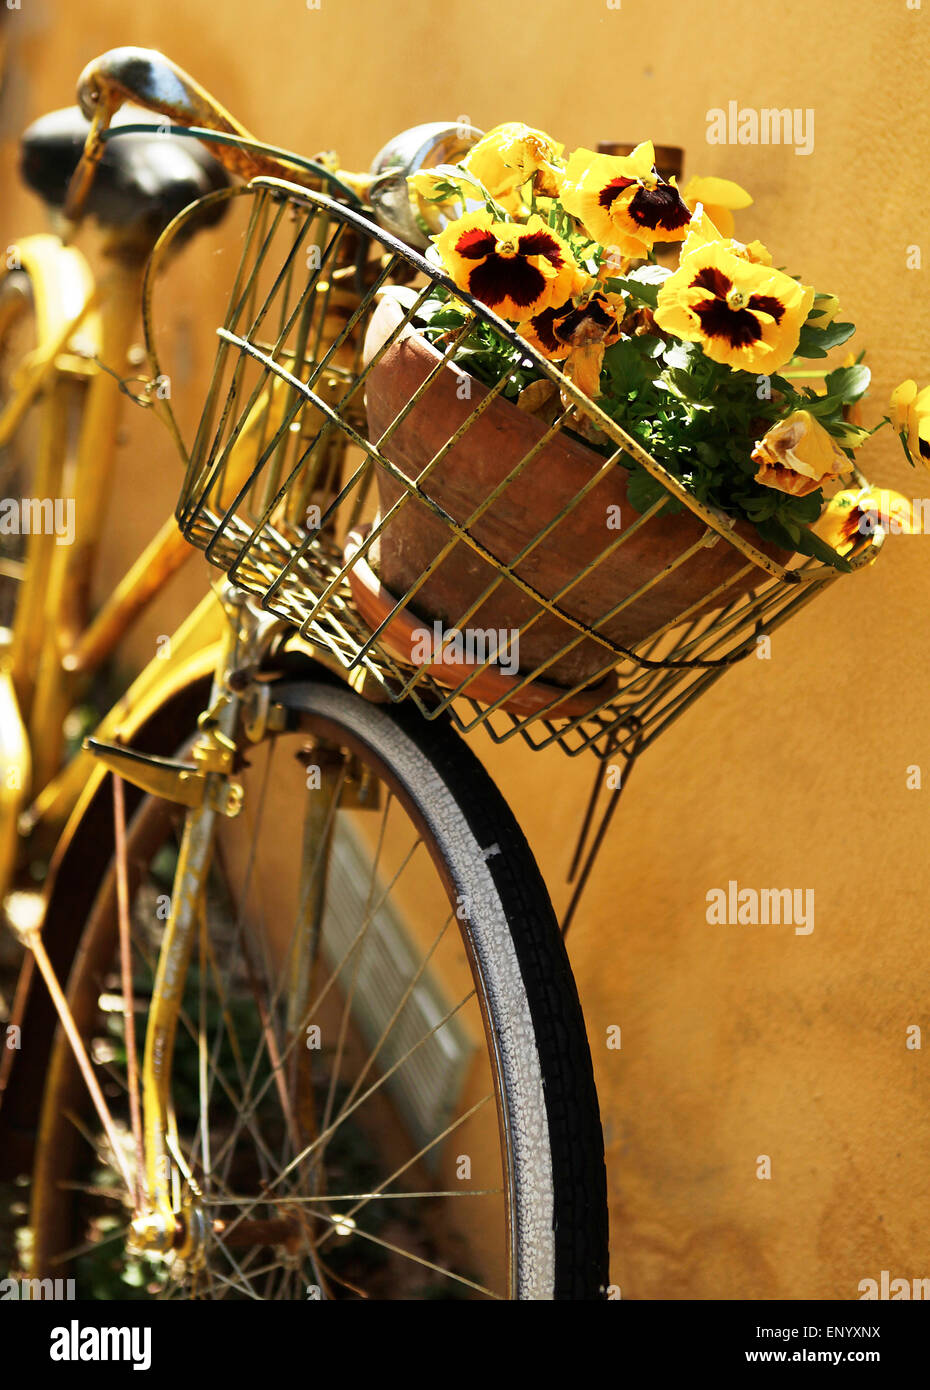 Moto gialla contro la parete - fiori in cesto Foto Stock